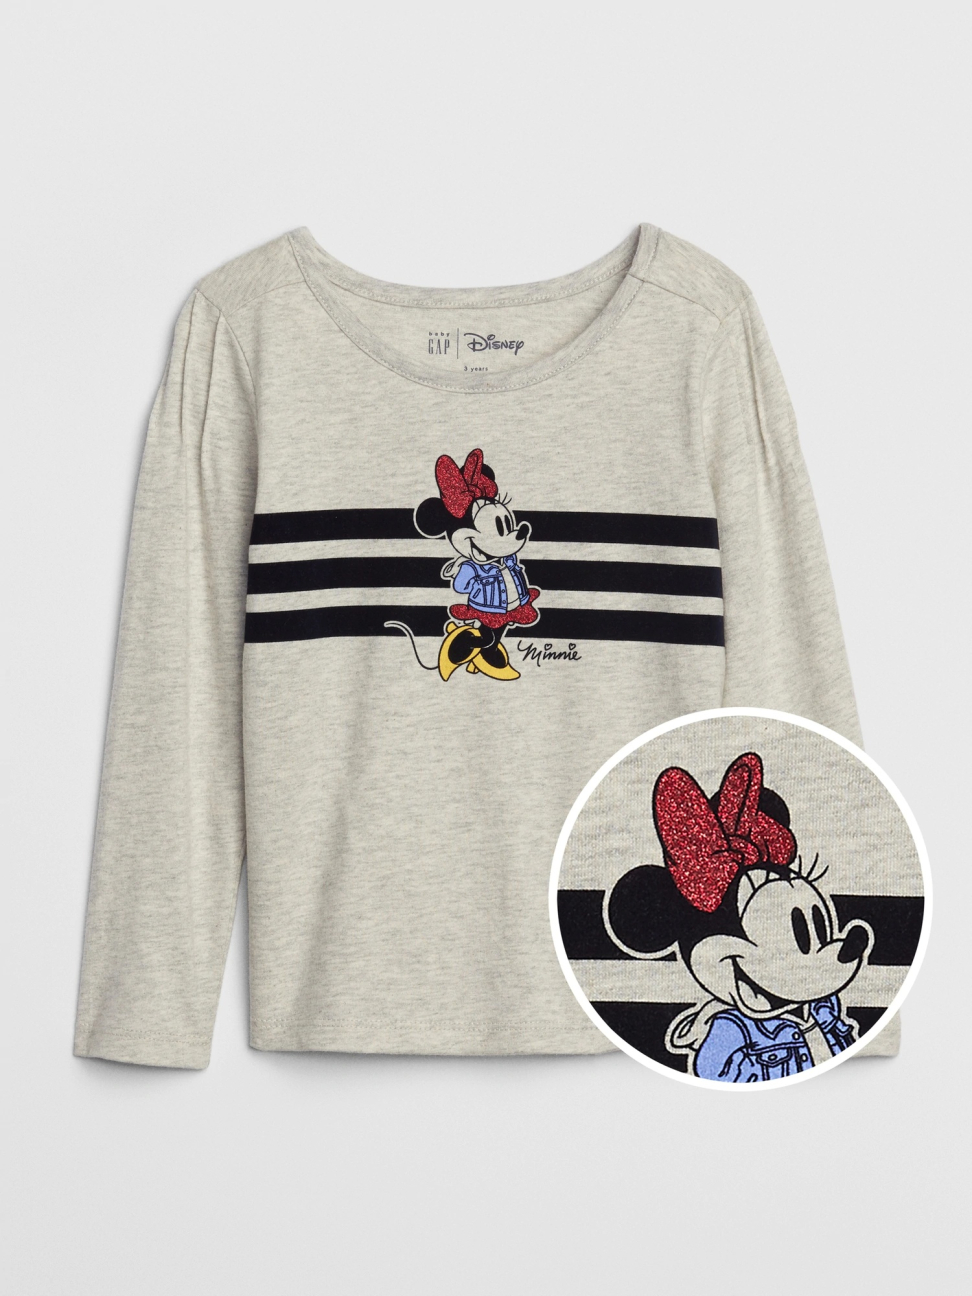 女幼童裝|Gap x Disney迪士尼聯名 米妮印花圓領長袖T恤-石楠灰色